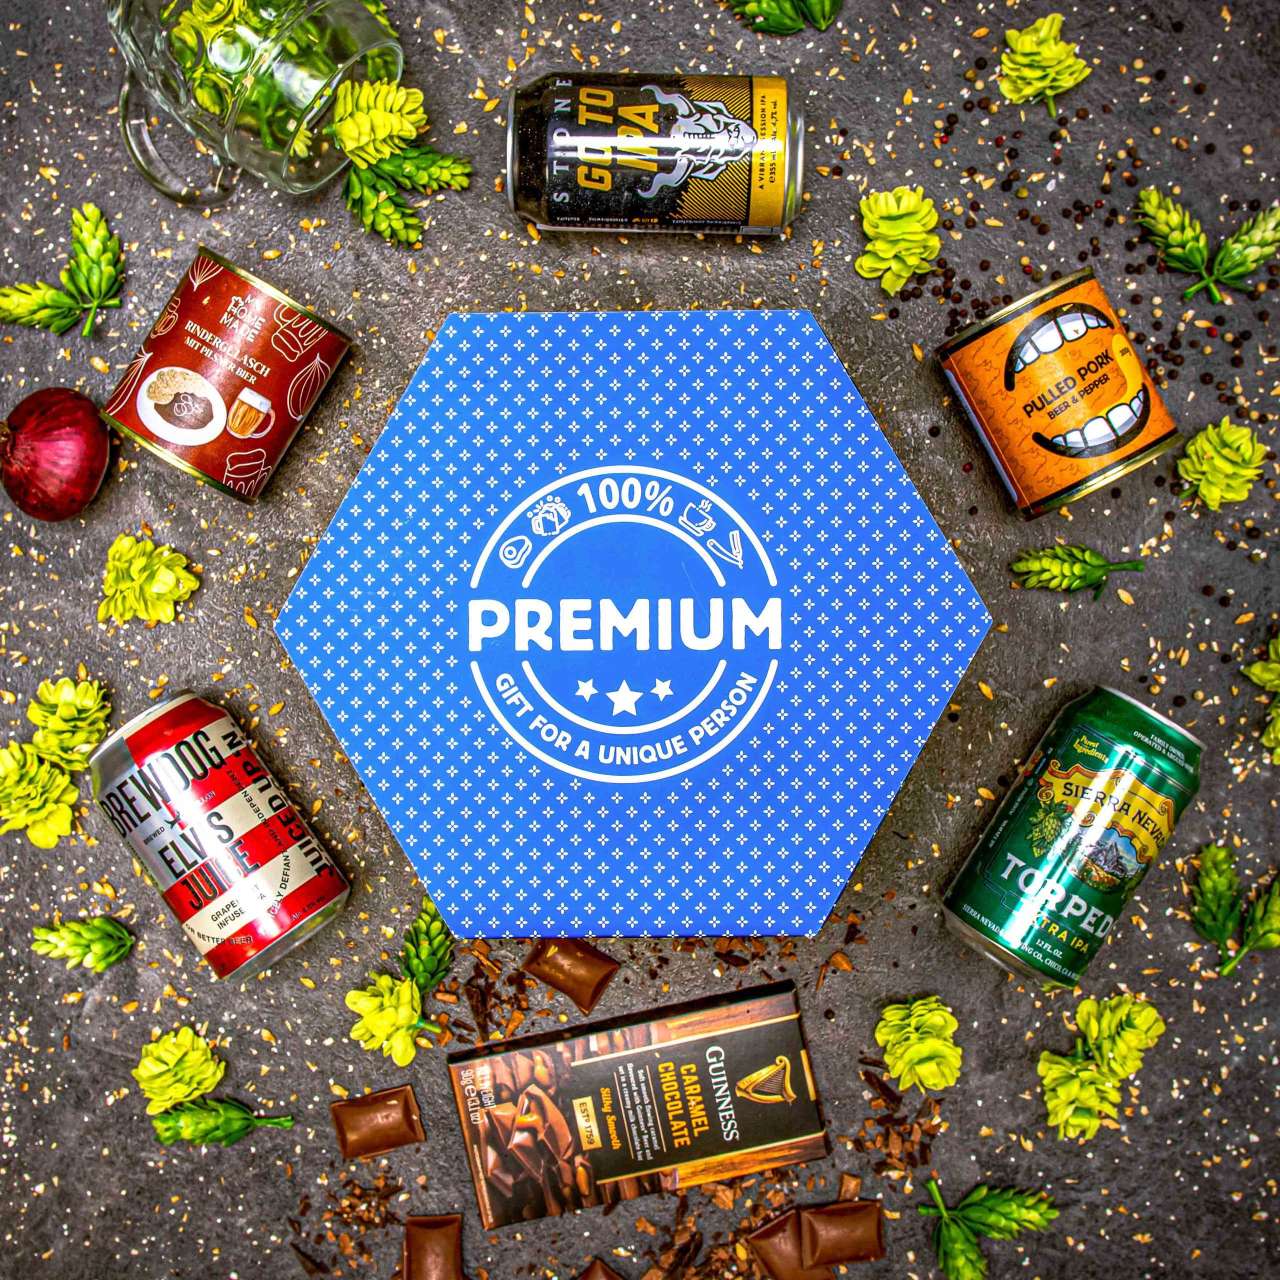 Hexagon plný pivních specialit  - Modrý